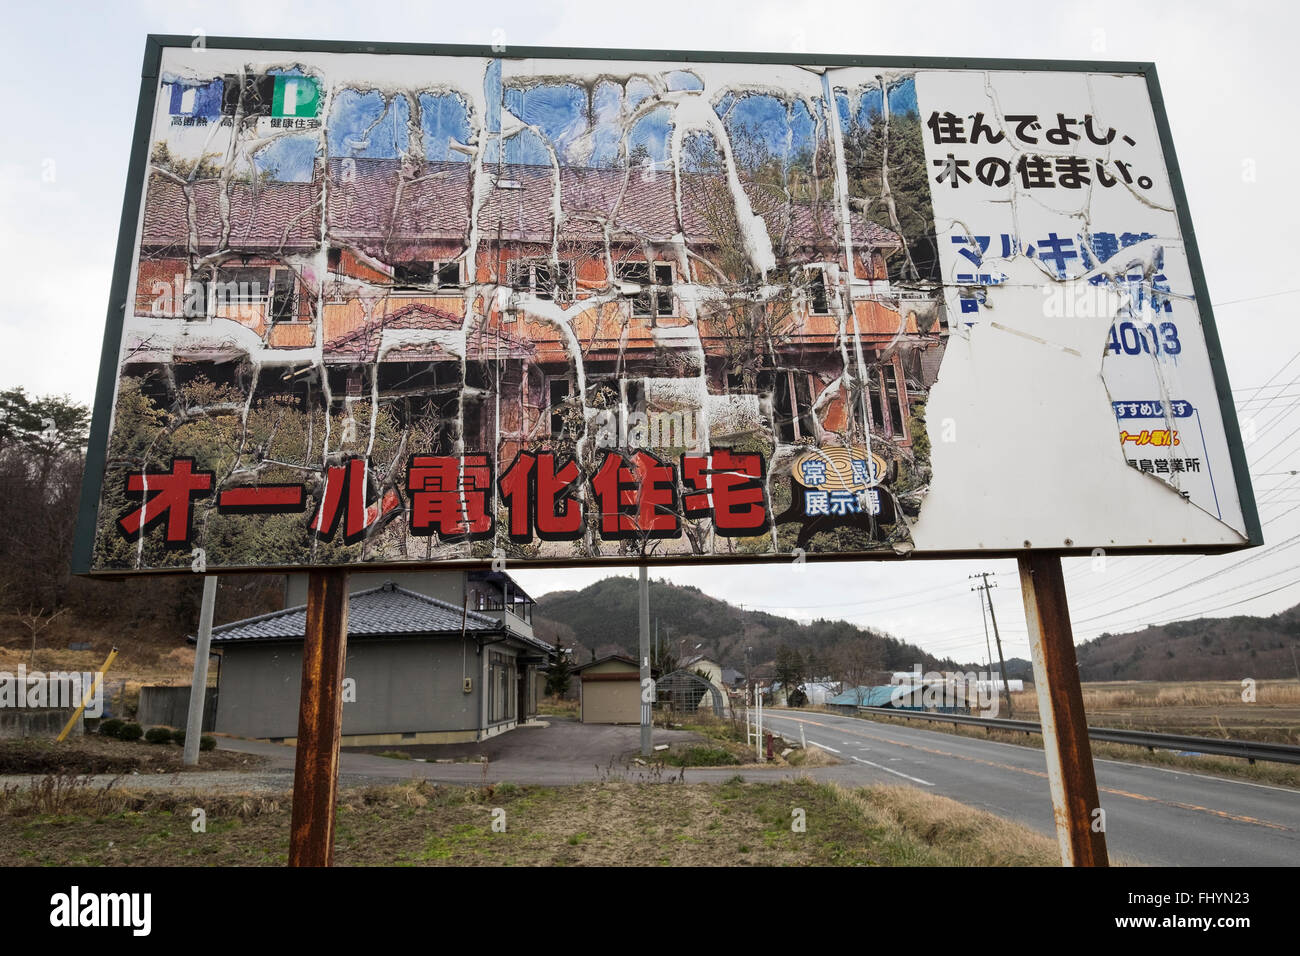 Eine sich verschlechternde Werbeschild für eine elektrische Haus in einem Bereich, der durch den 2011 Tsunami und Atomkatastrophe betroffen war. Stockfoto